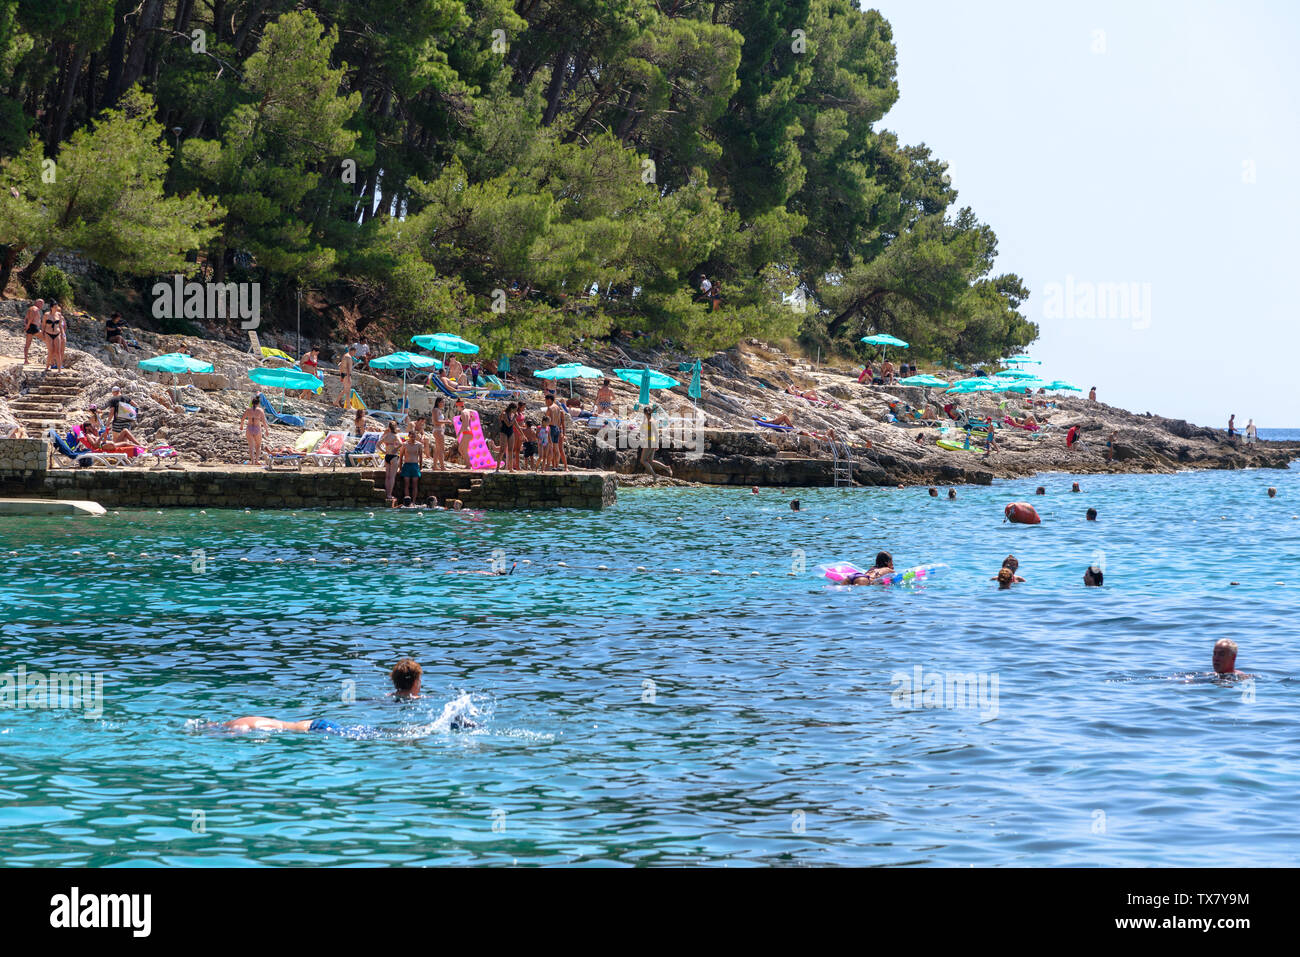 Les gens dans l'eau et de bronzage sur les rochers de Veli Žal beach à Mali Losinj, Croatie Banque D'Images